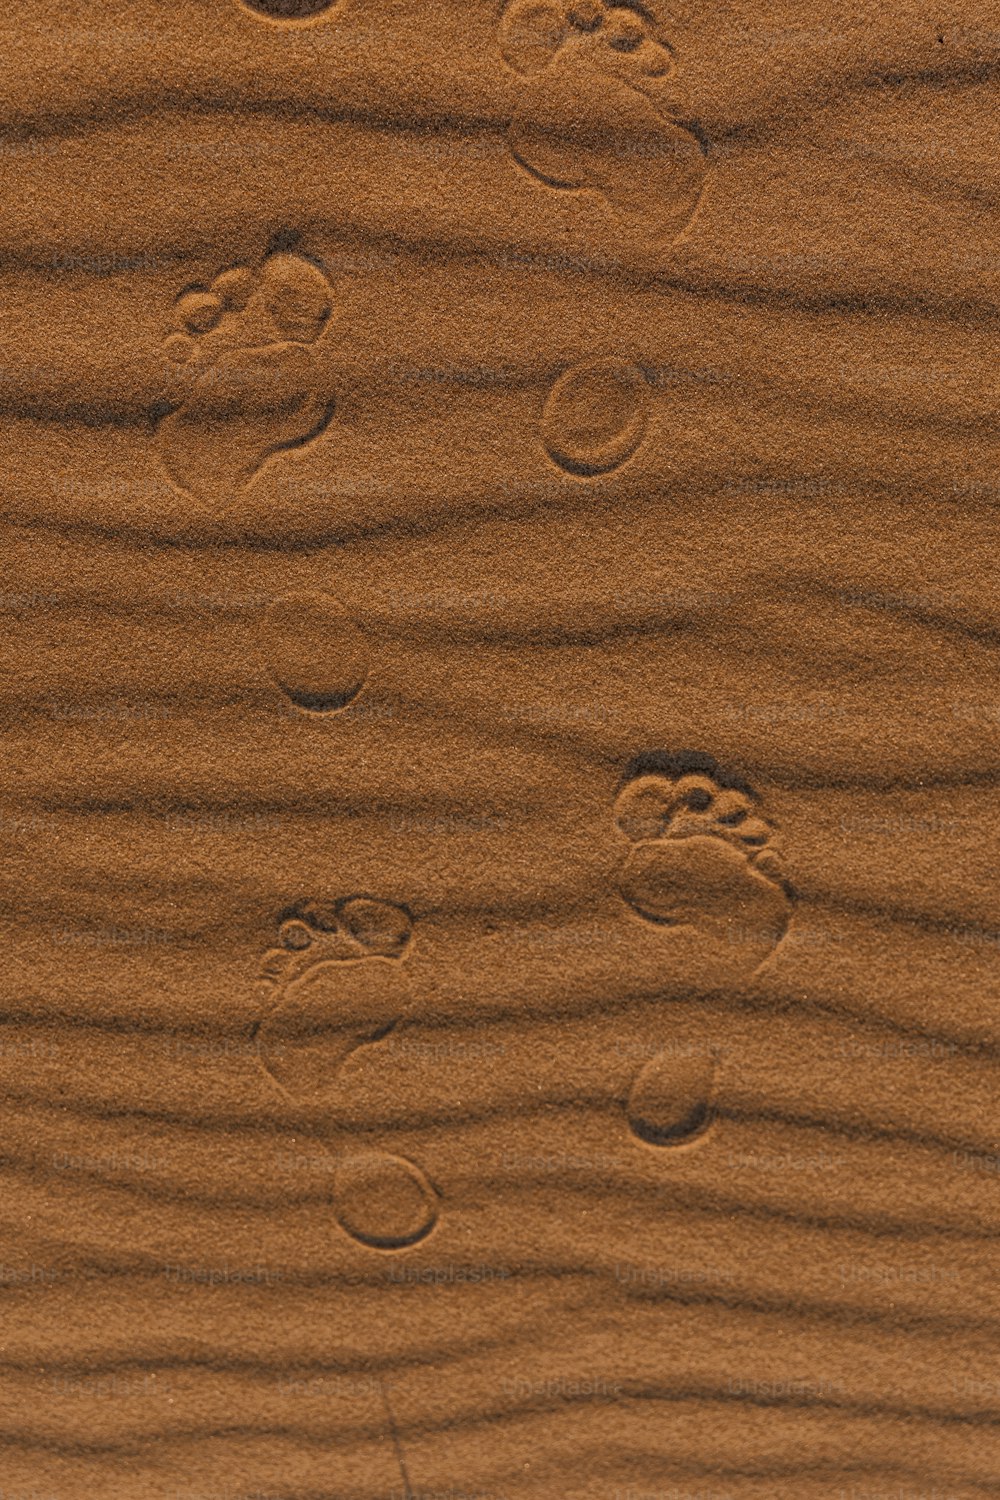 Huellas en la arena de una playa